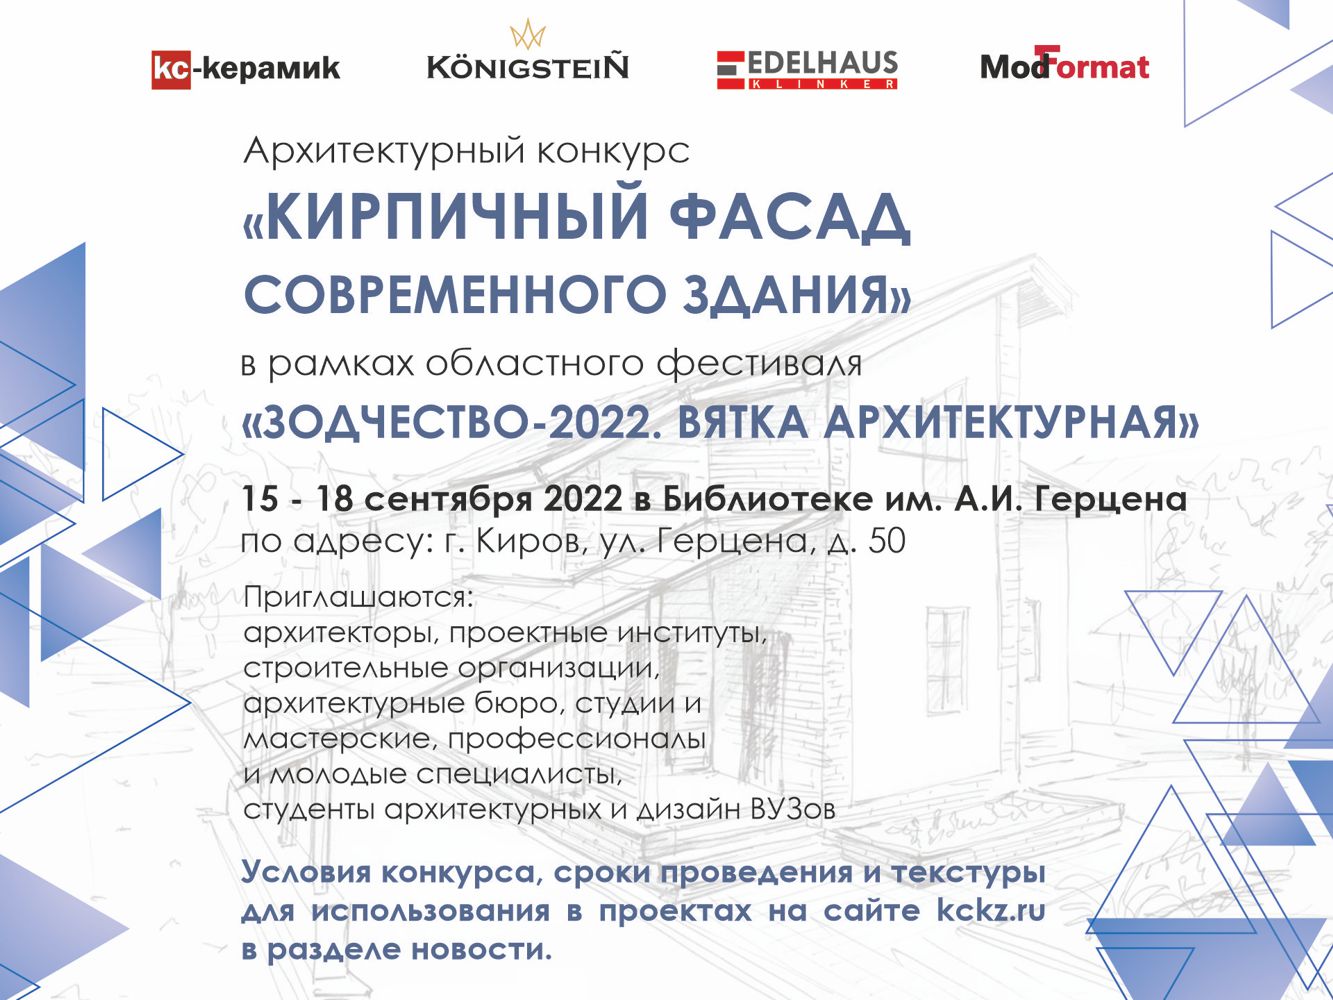 Архитектурный конкурс проектов «Кирпичный фасад современного здания» состоится!